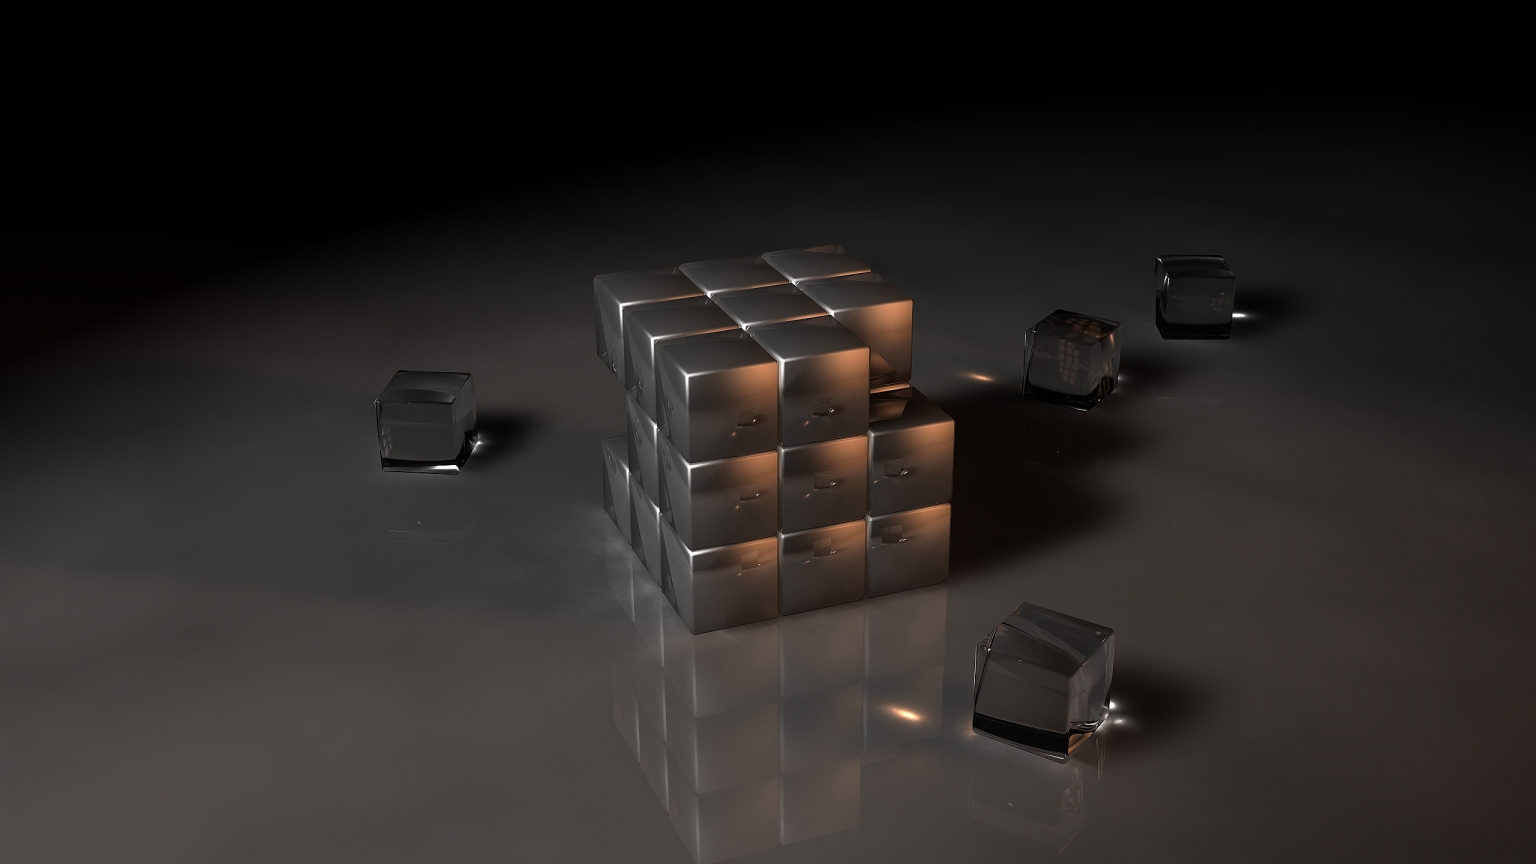 Black Rubiks Cube for 1536 x 864 HDTV resolution